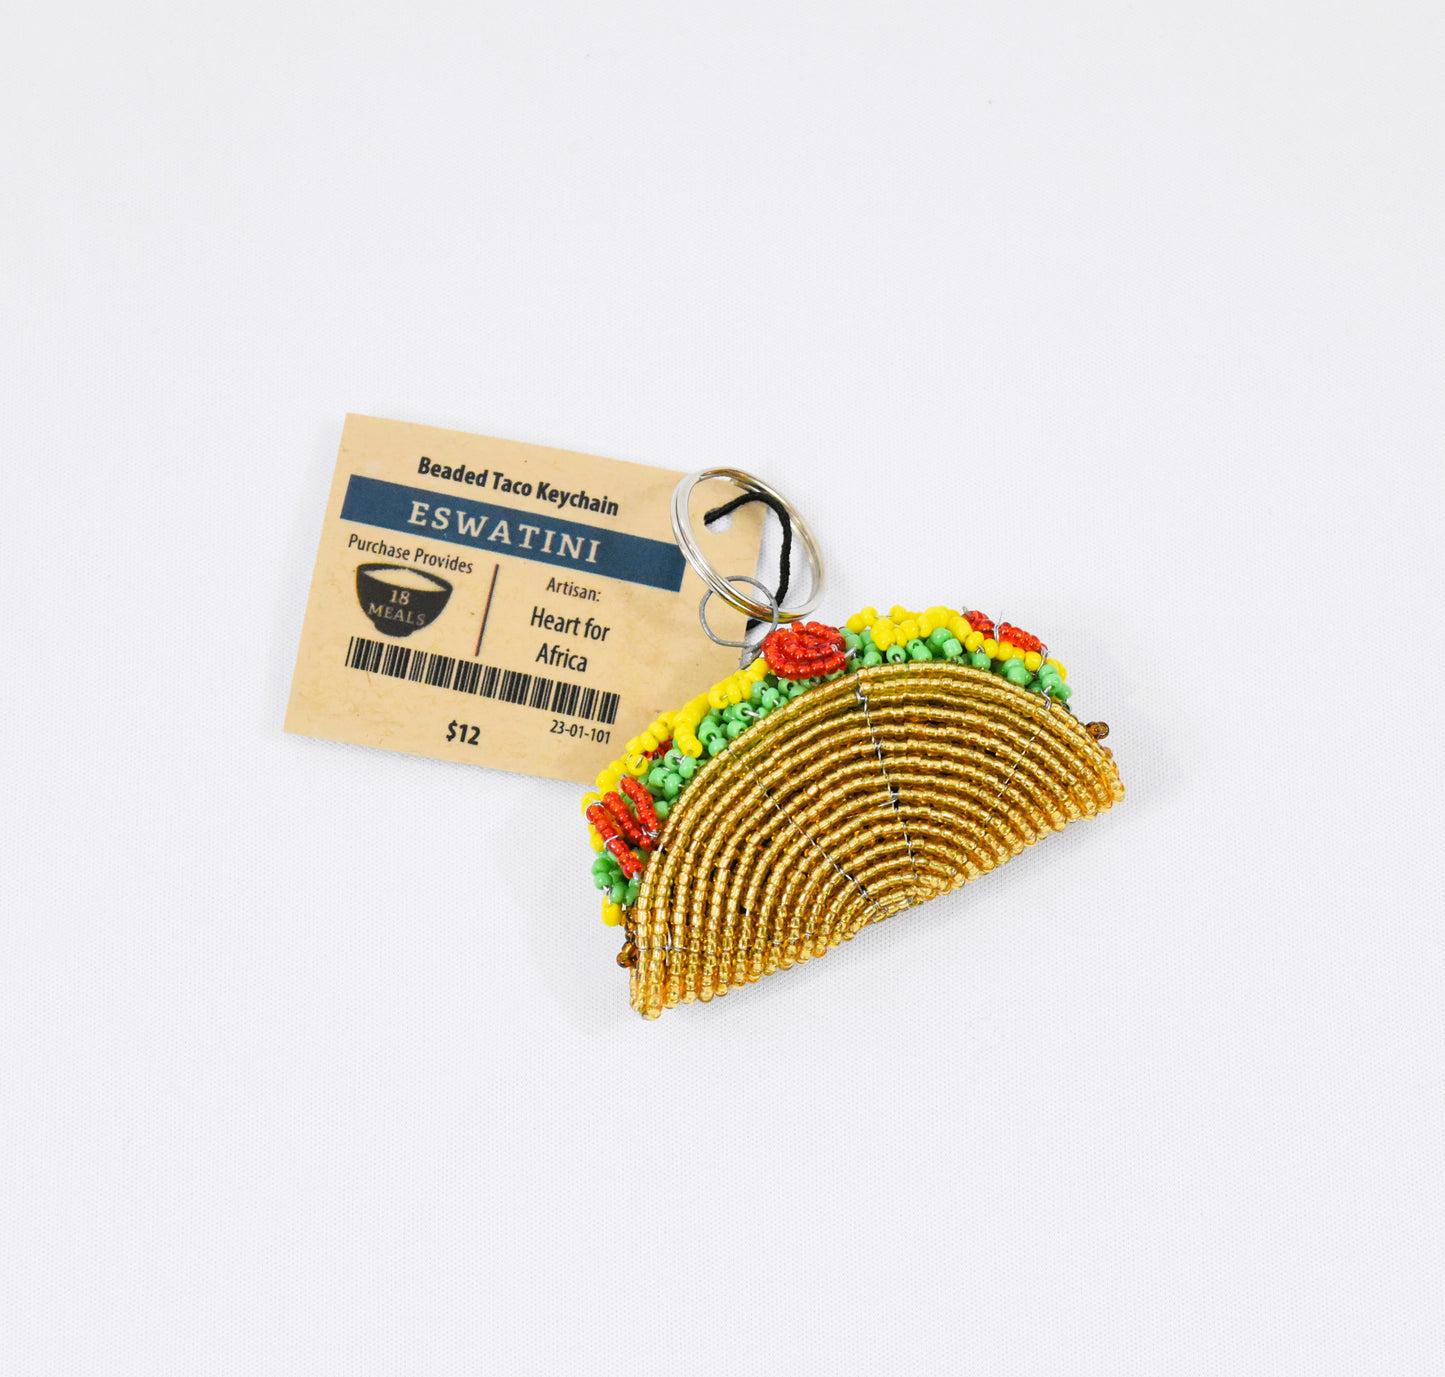 Beaded Taco Keychain